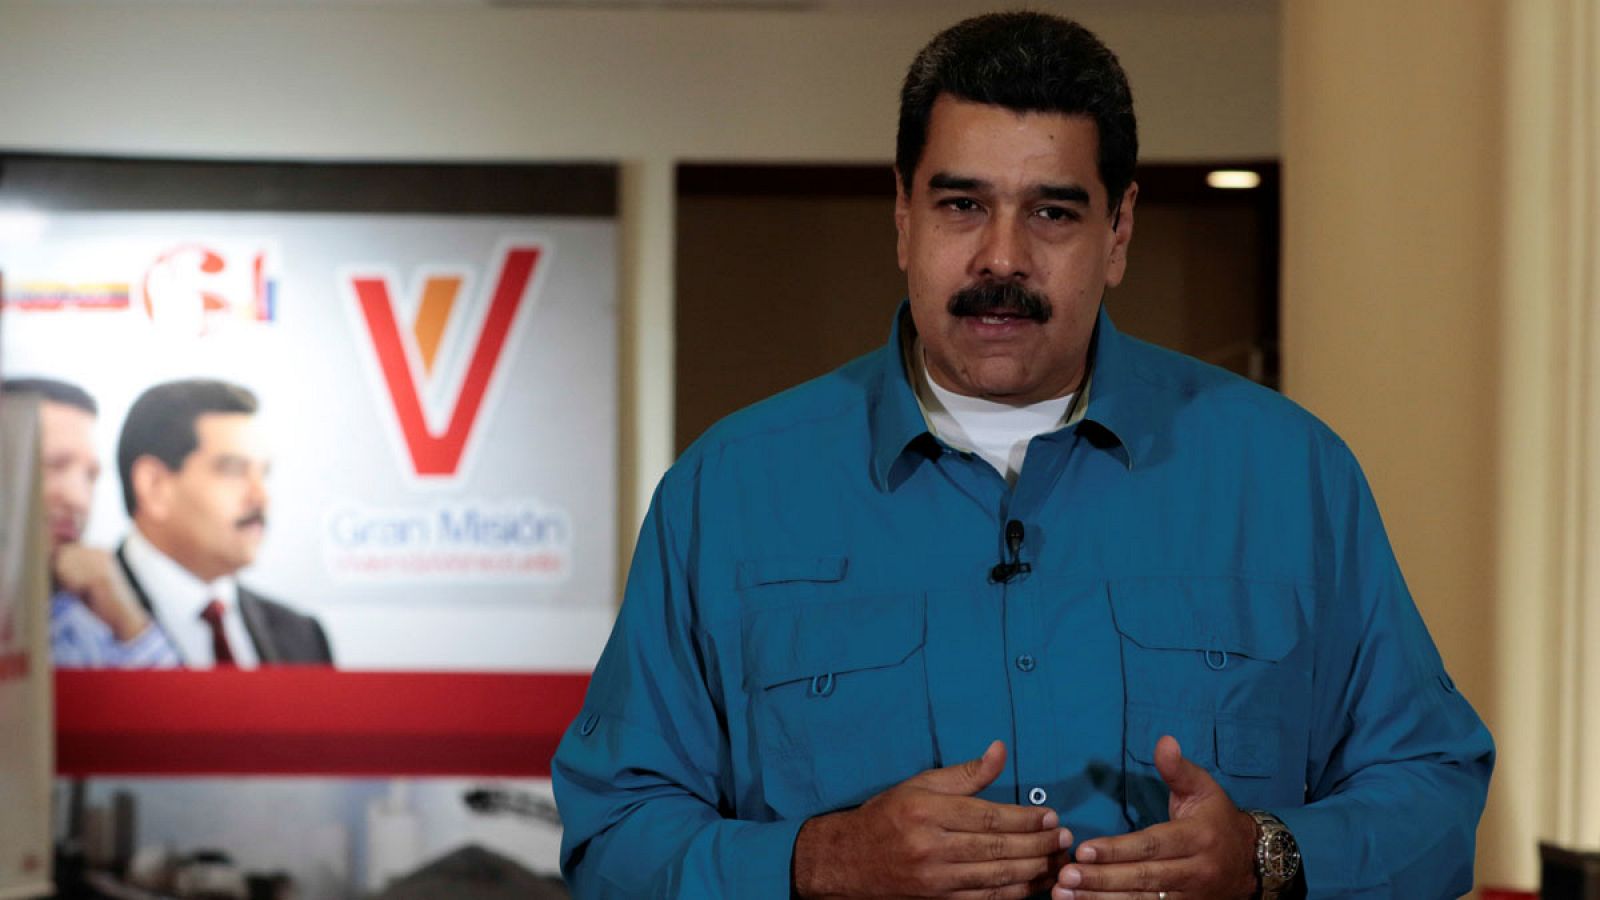 El presidente de Venezuela durante su discurso en el programa semanal "Los Domingos con Maduro" emitido el 30 de abril de 2017.